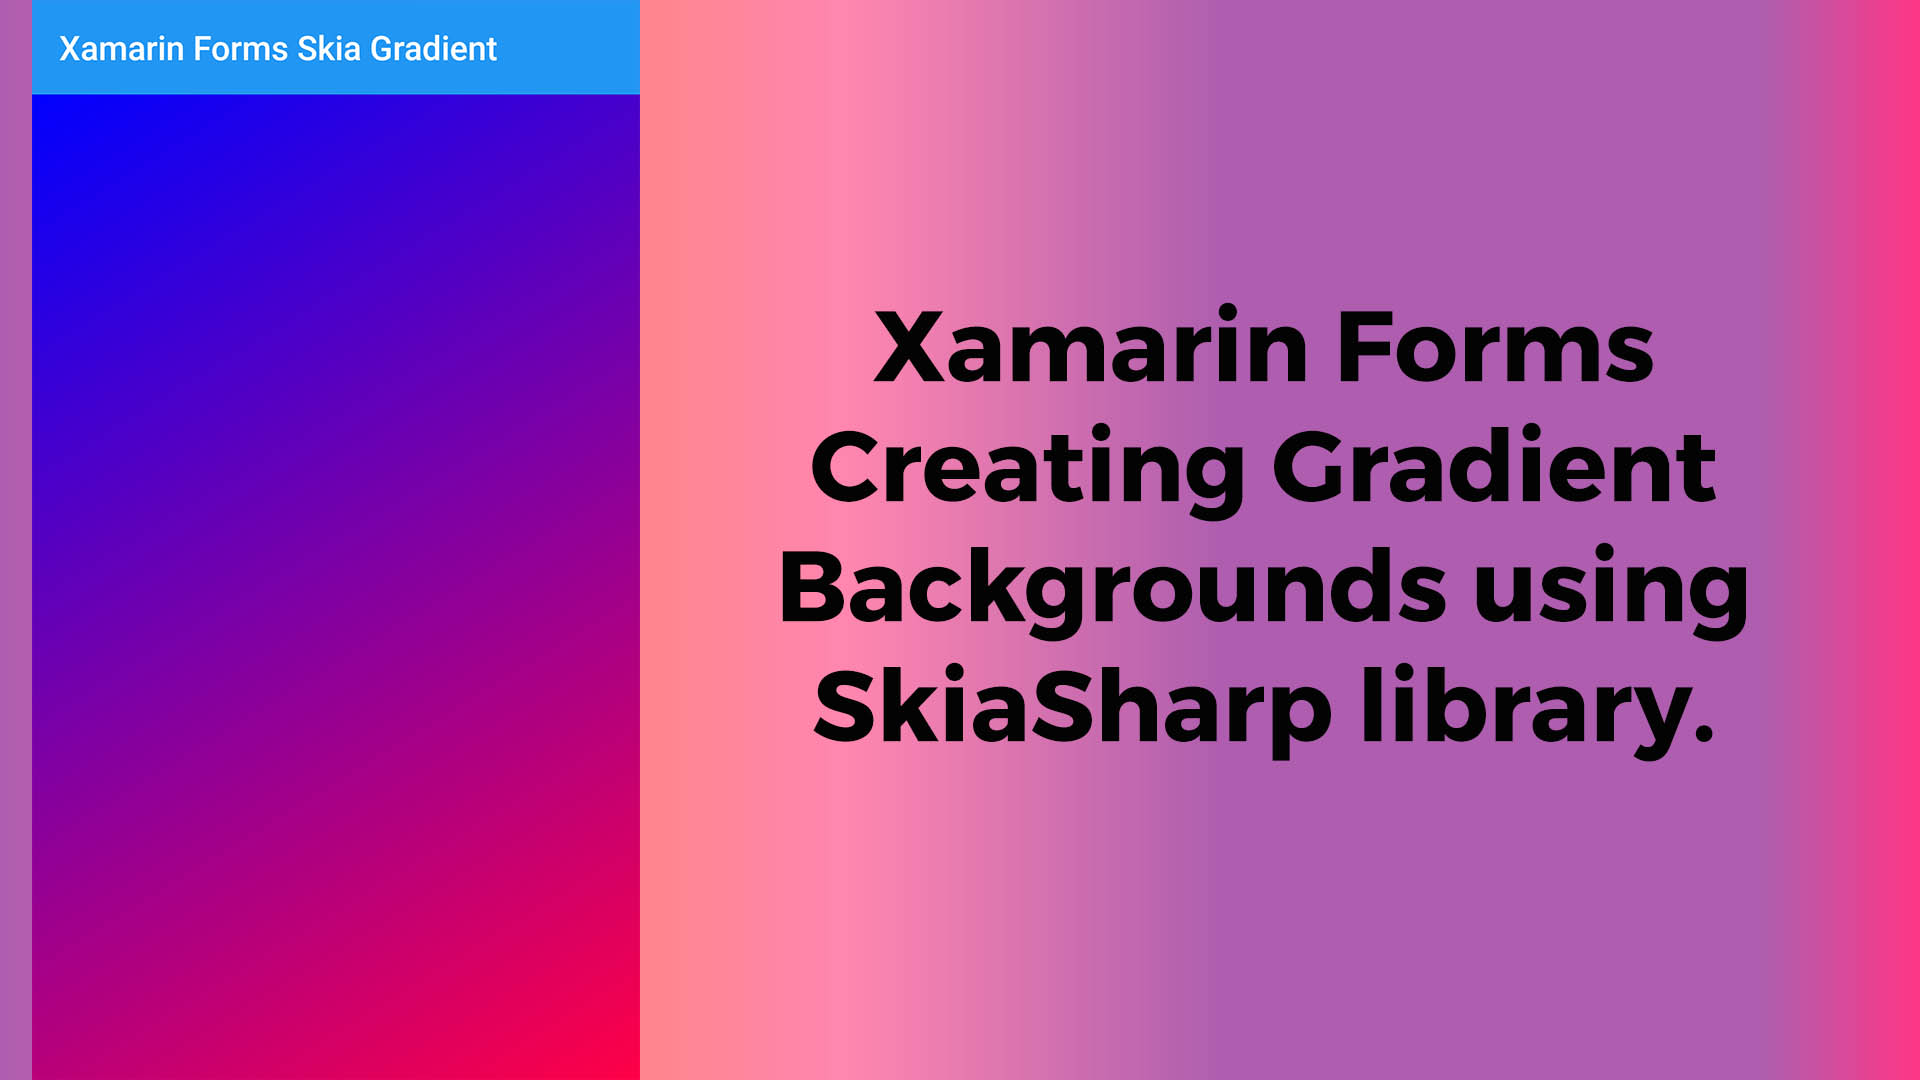 Tận hưởng một màn hình đầy màu sắc với SkiaSharp Gradient Backgrounds trên xamarin.forms. Được thiết kế đẹp mắt với hiệu ứng gradient sống động, SkiaSharp Gradient Backgrounds chắc chắn sẽ thu hút mọi ánh nhìn của bạn.